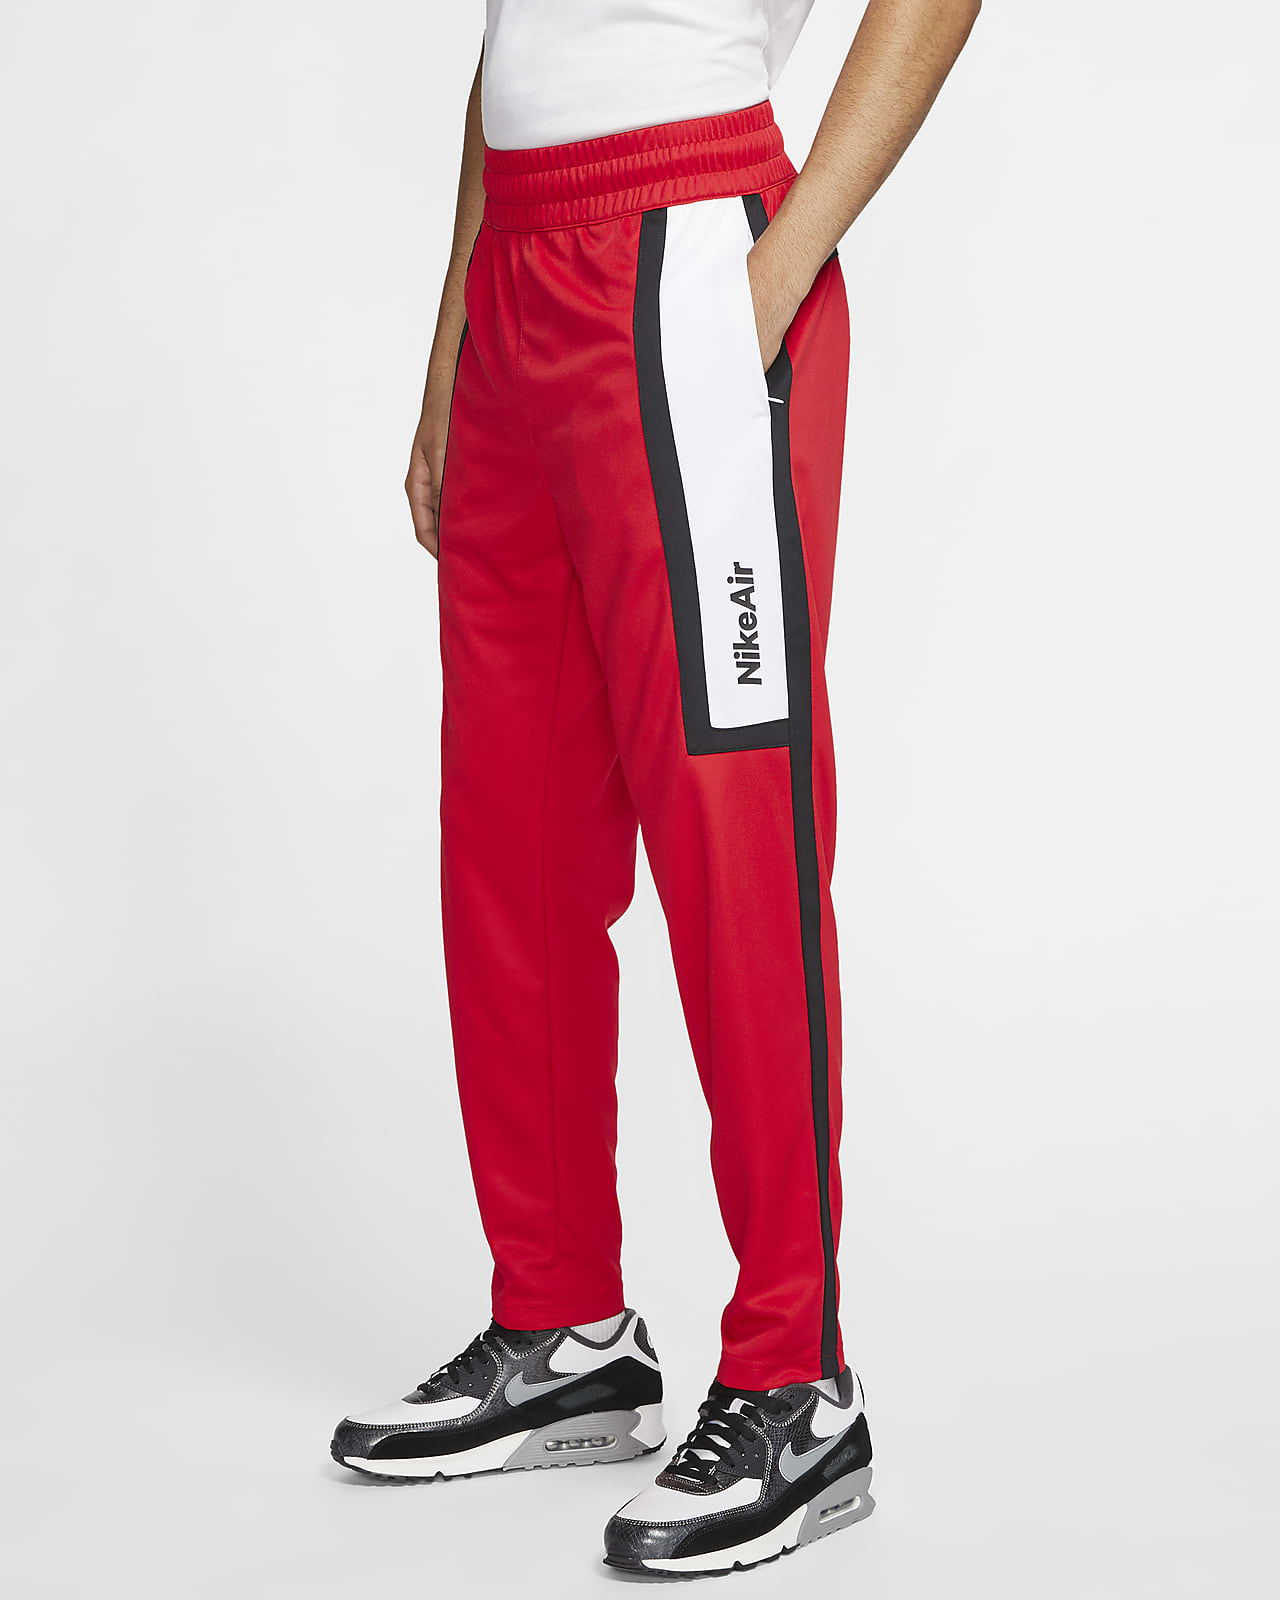 Pantalones para hombre Nike Air. Nike MX